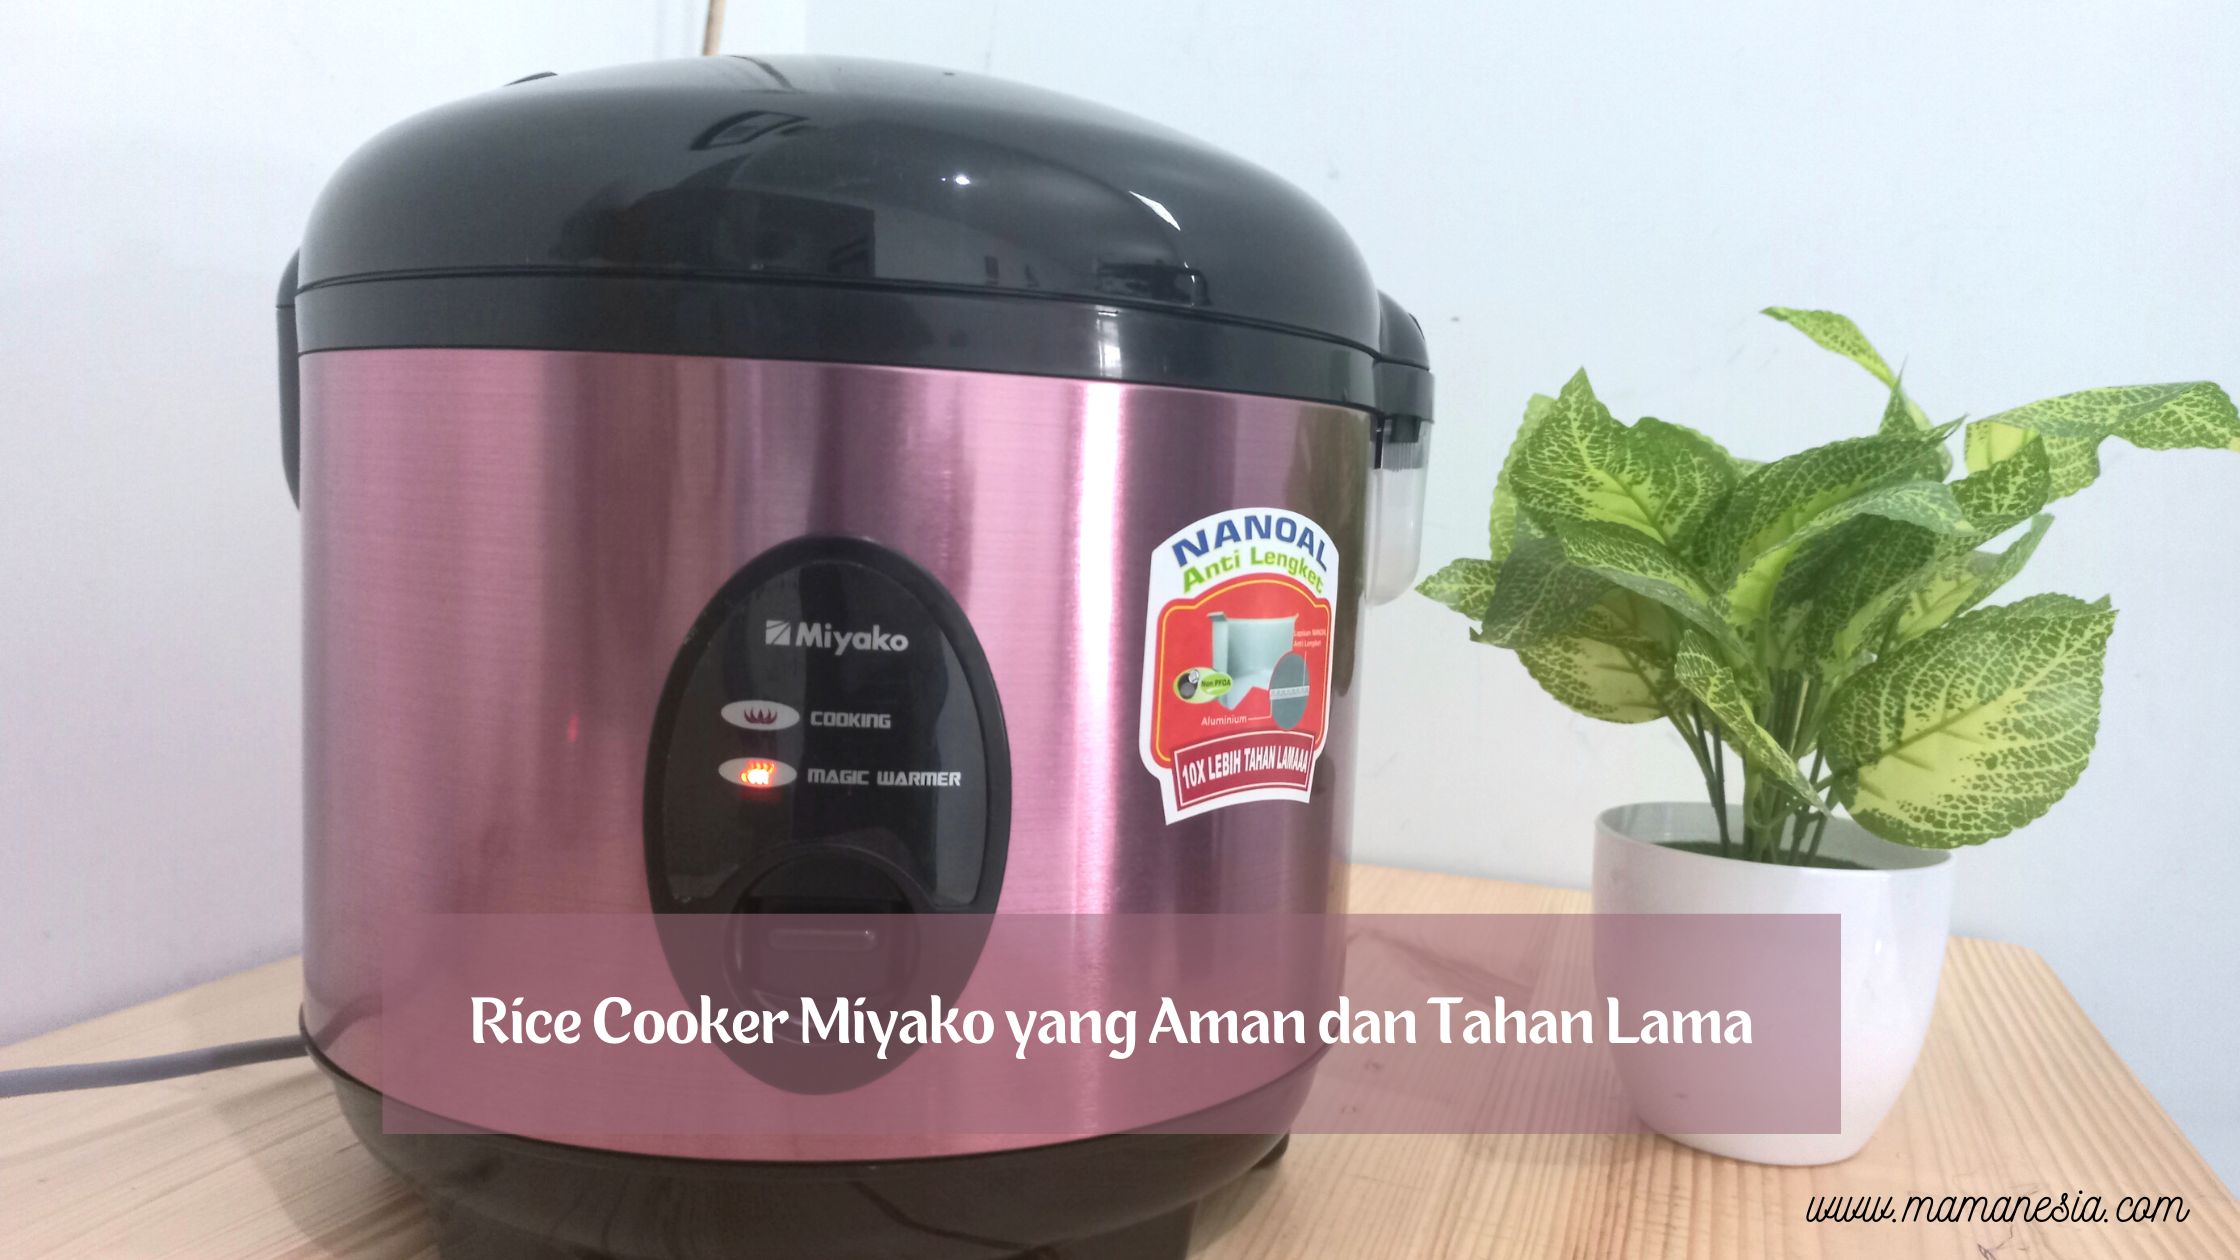 rice cooker 10x tahan lama